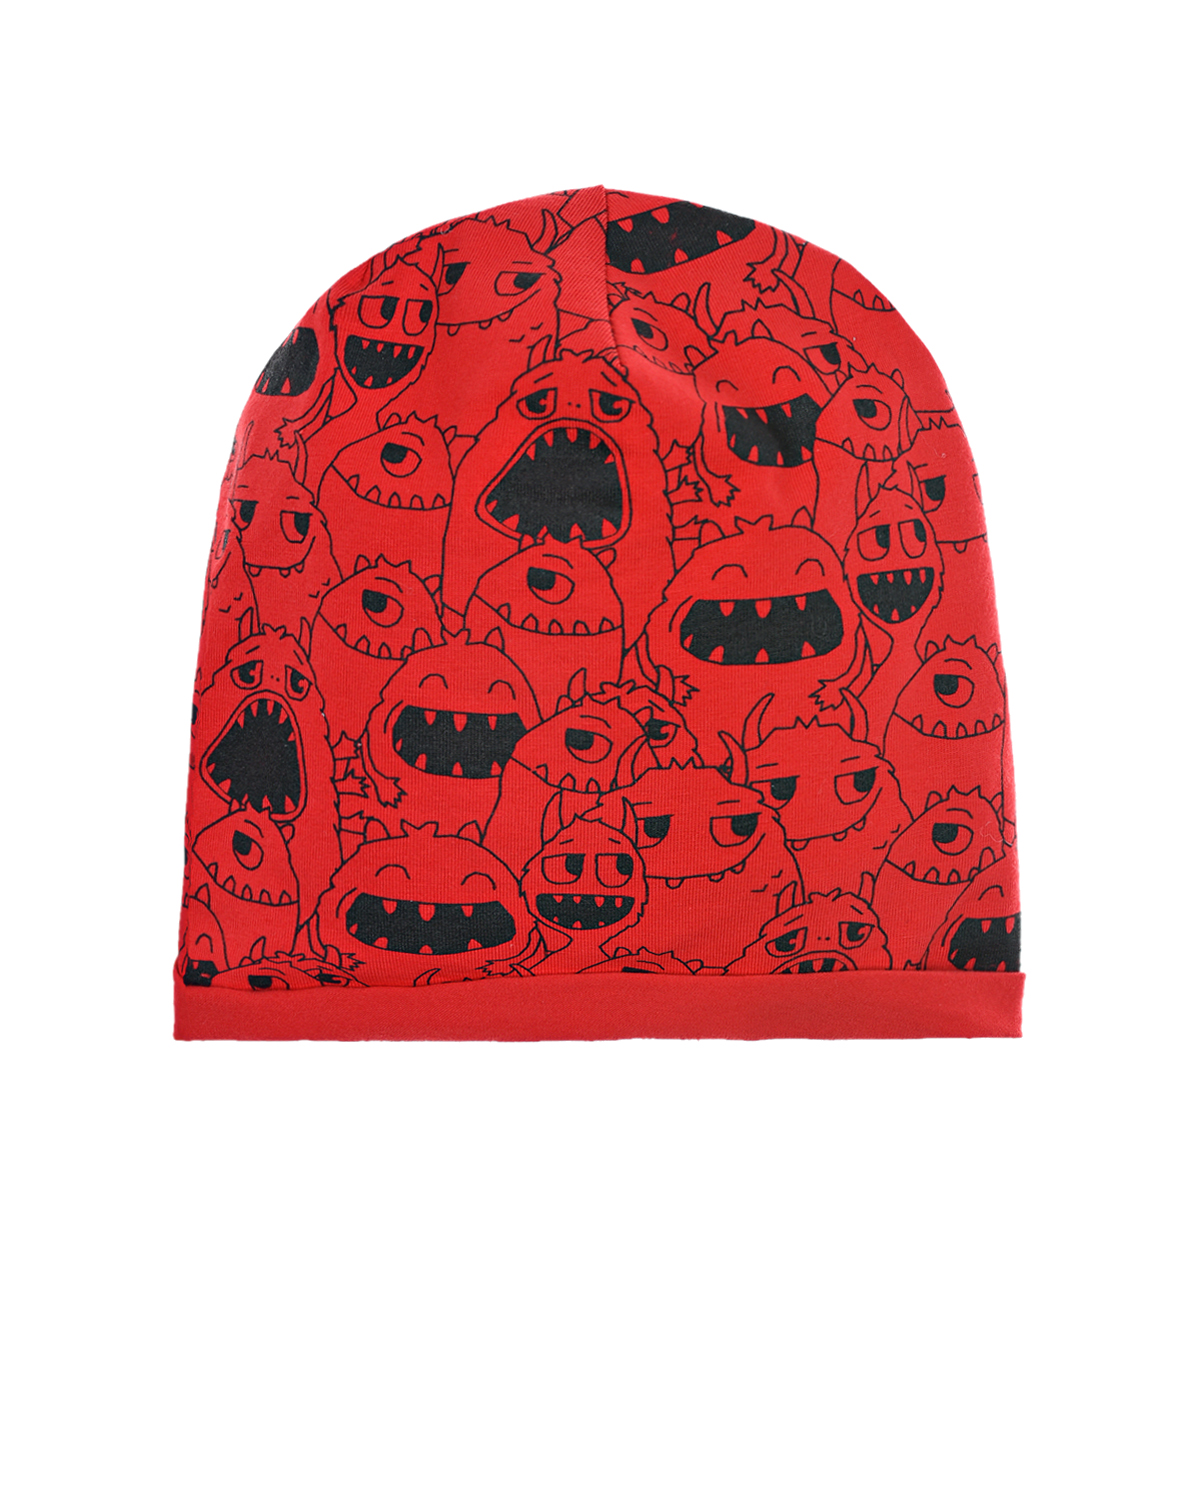 Красная трикотажная шапка с принтом "Монстры" Catya детская, размер 49, цвет красный - фото 1